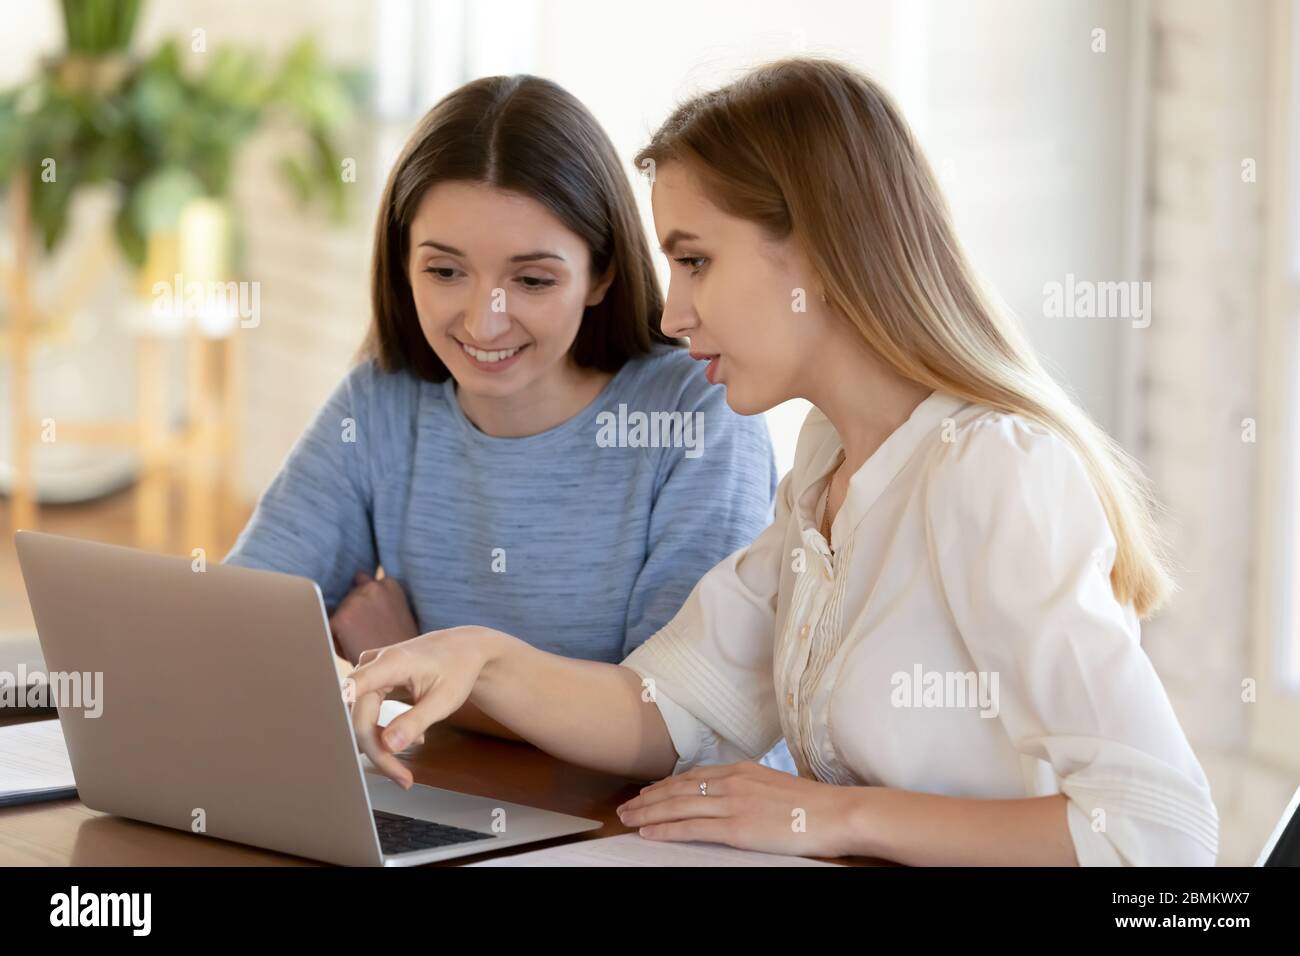 Les employés souriants font un brainstorming pour travailler ensemble sur un ordinateur portable Banque D'Images